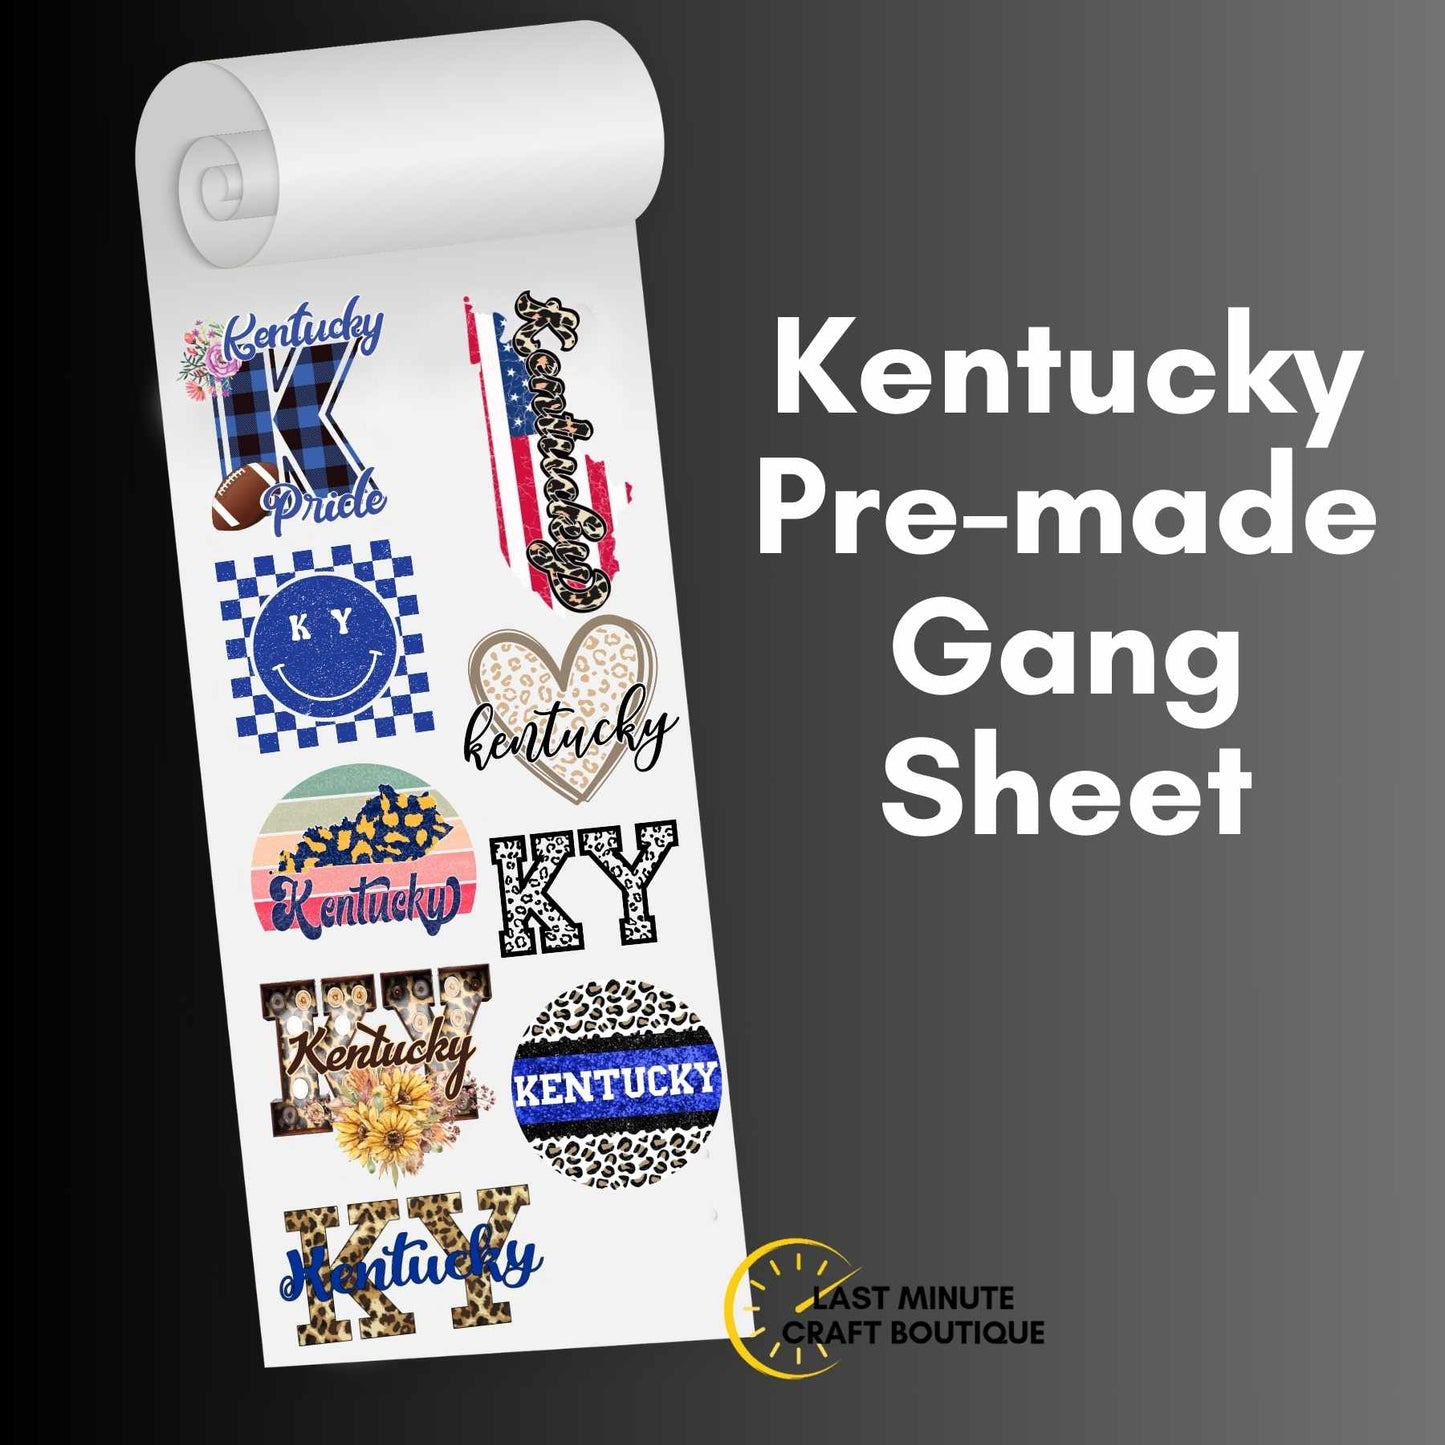 Kentucky Pre-made Gang Sheet